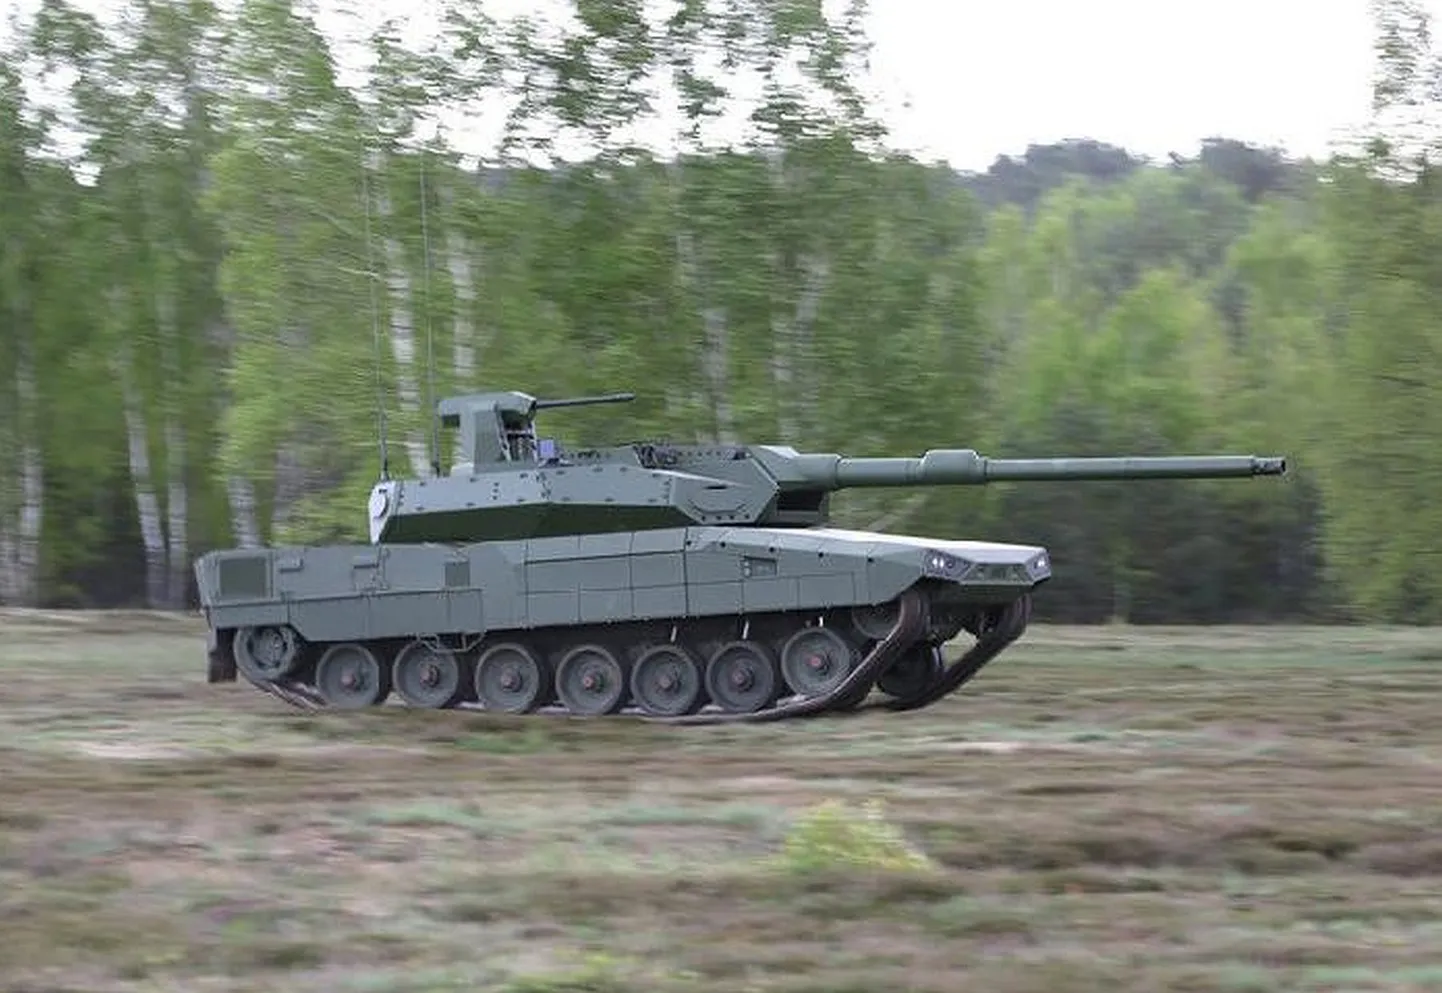 Uus Euroopa tank on madalam ja jääb seega lahinguväljal vähem silma, kuna tornis ei istu enam meeskonnaliige.